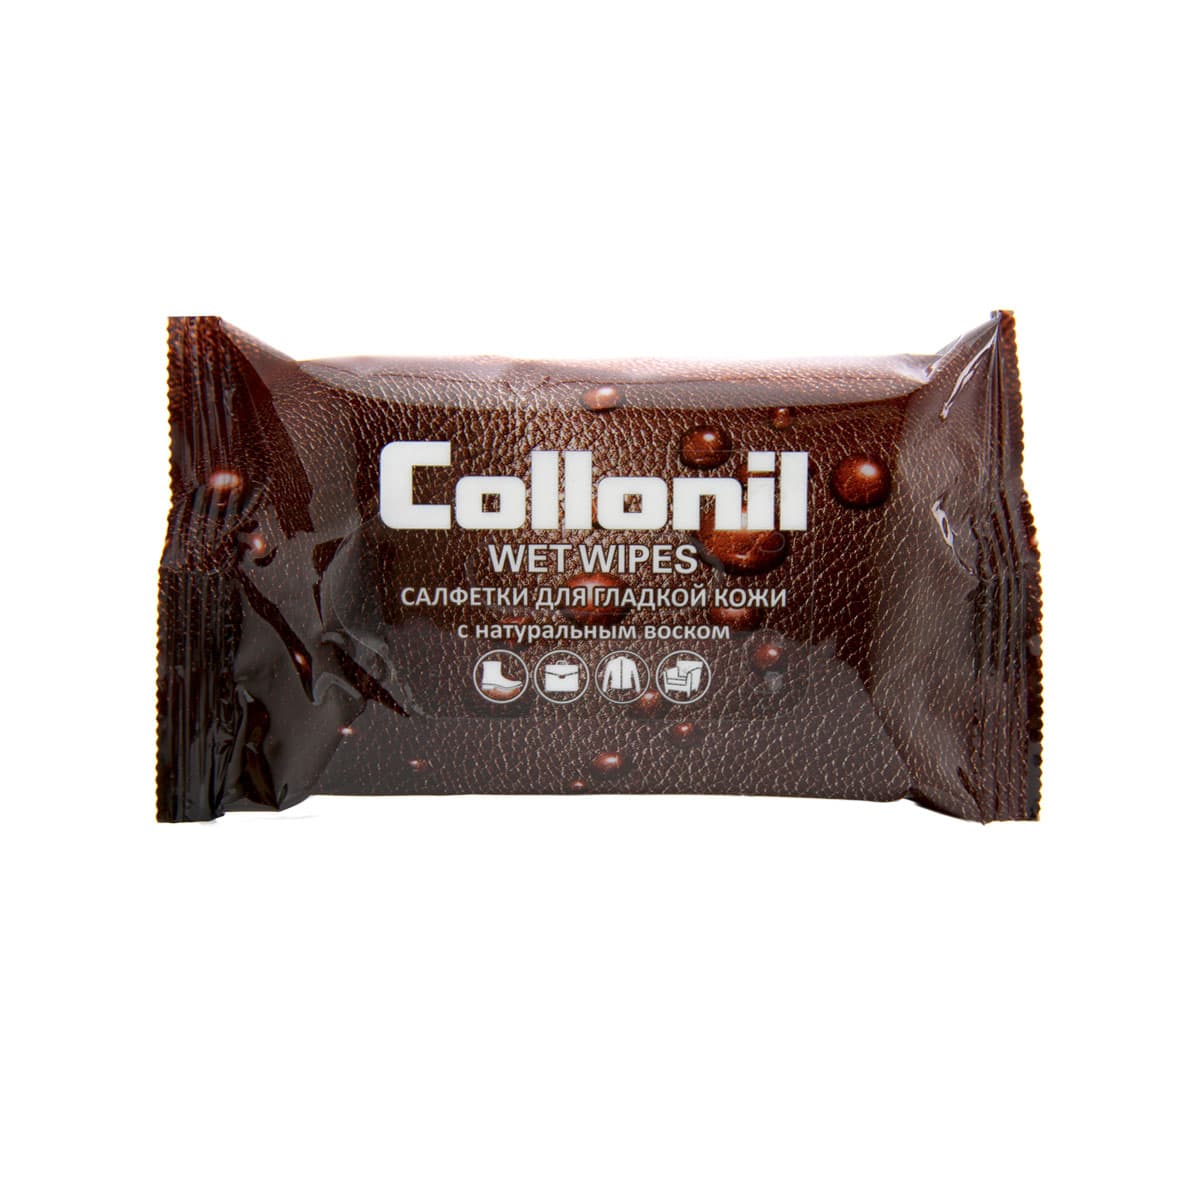 Влажные салфетки для гладкой кожи Collonil 15 шт салфетки влажные collonil wet wipes для лакированной кожи 15 шт